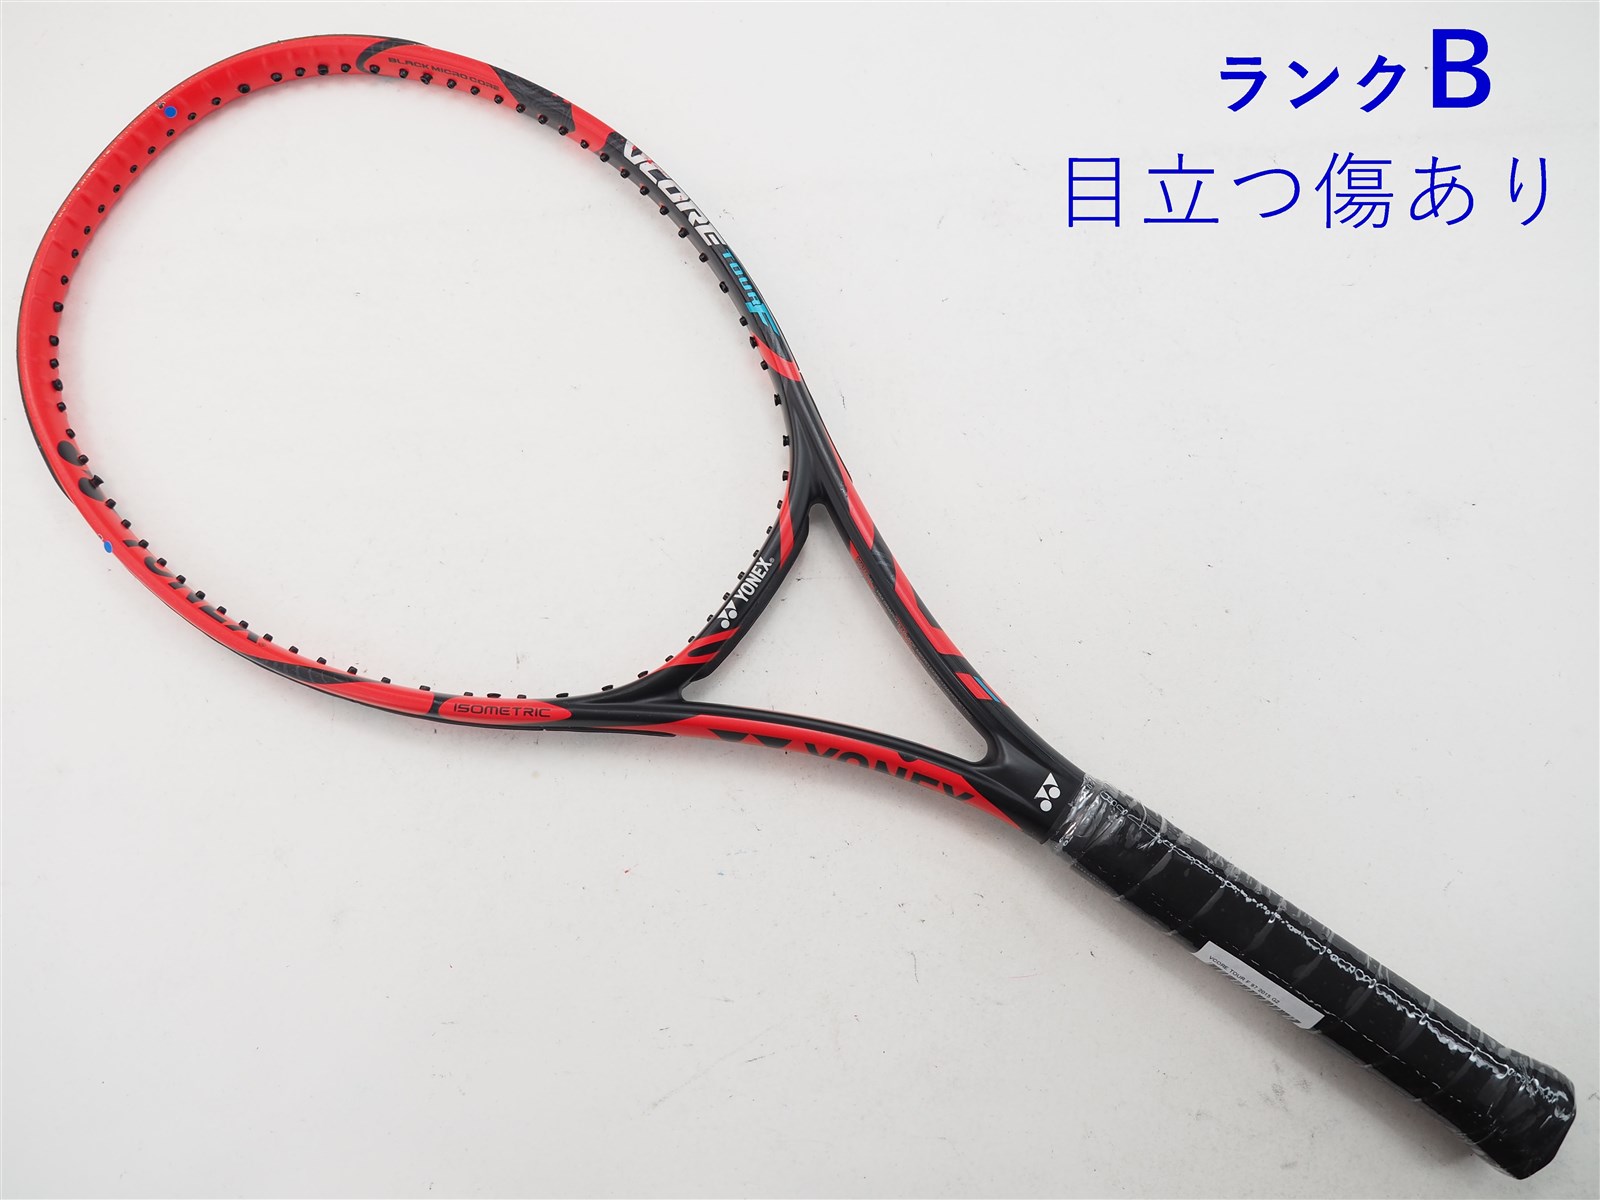 テニスラケット ヨネックス ブイコア ツアー 97 2012年モデル (G3